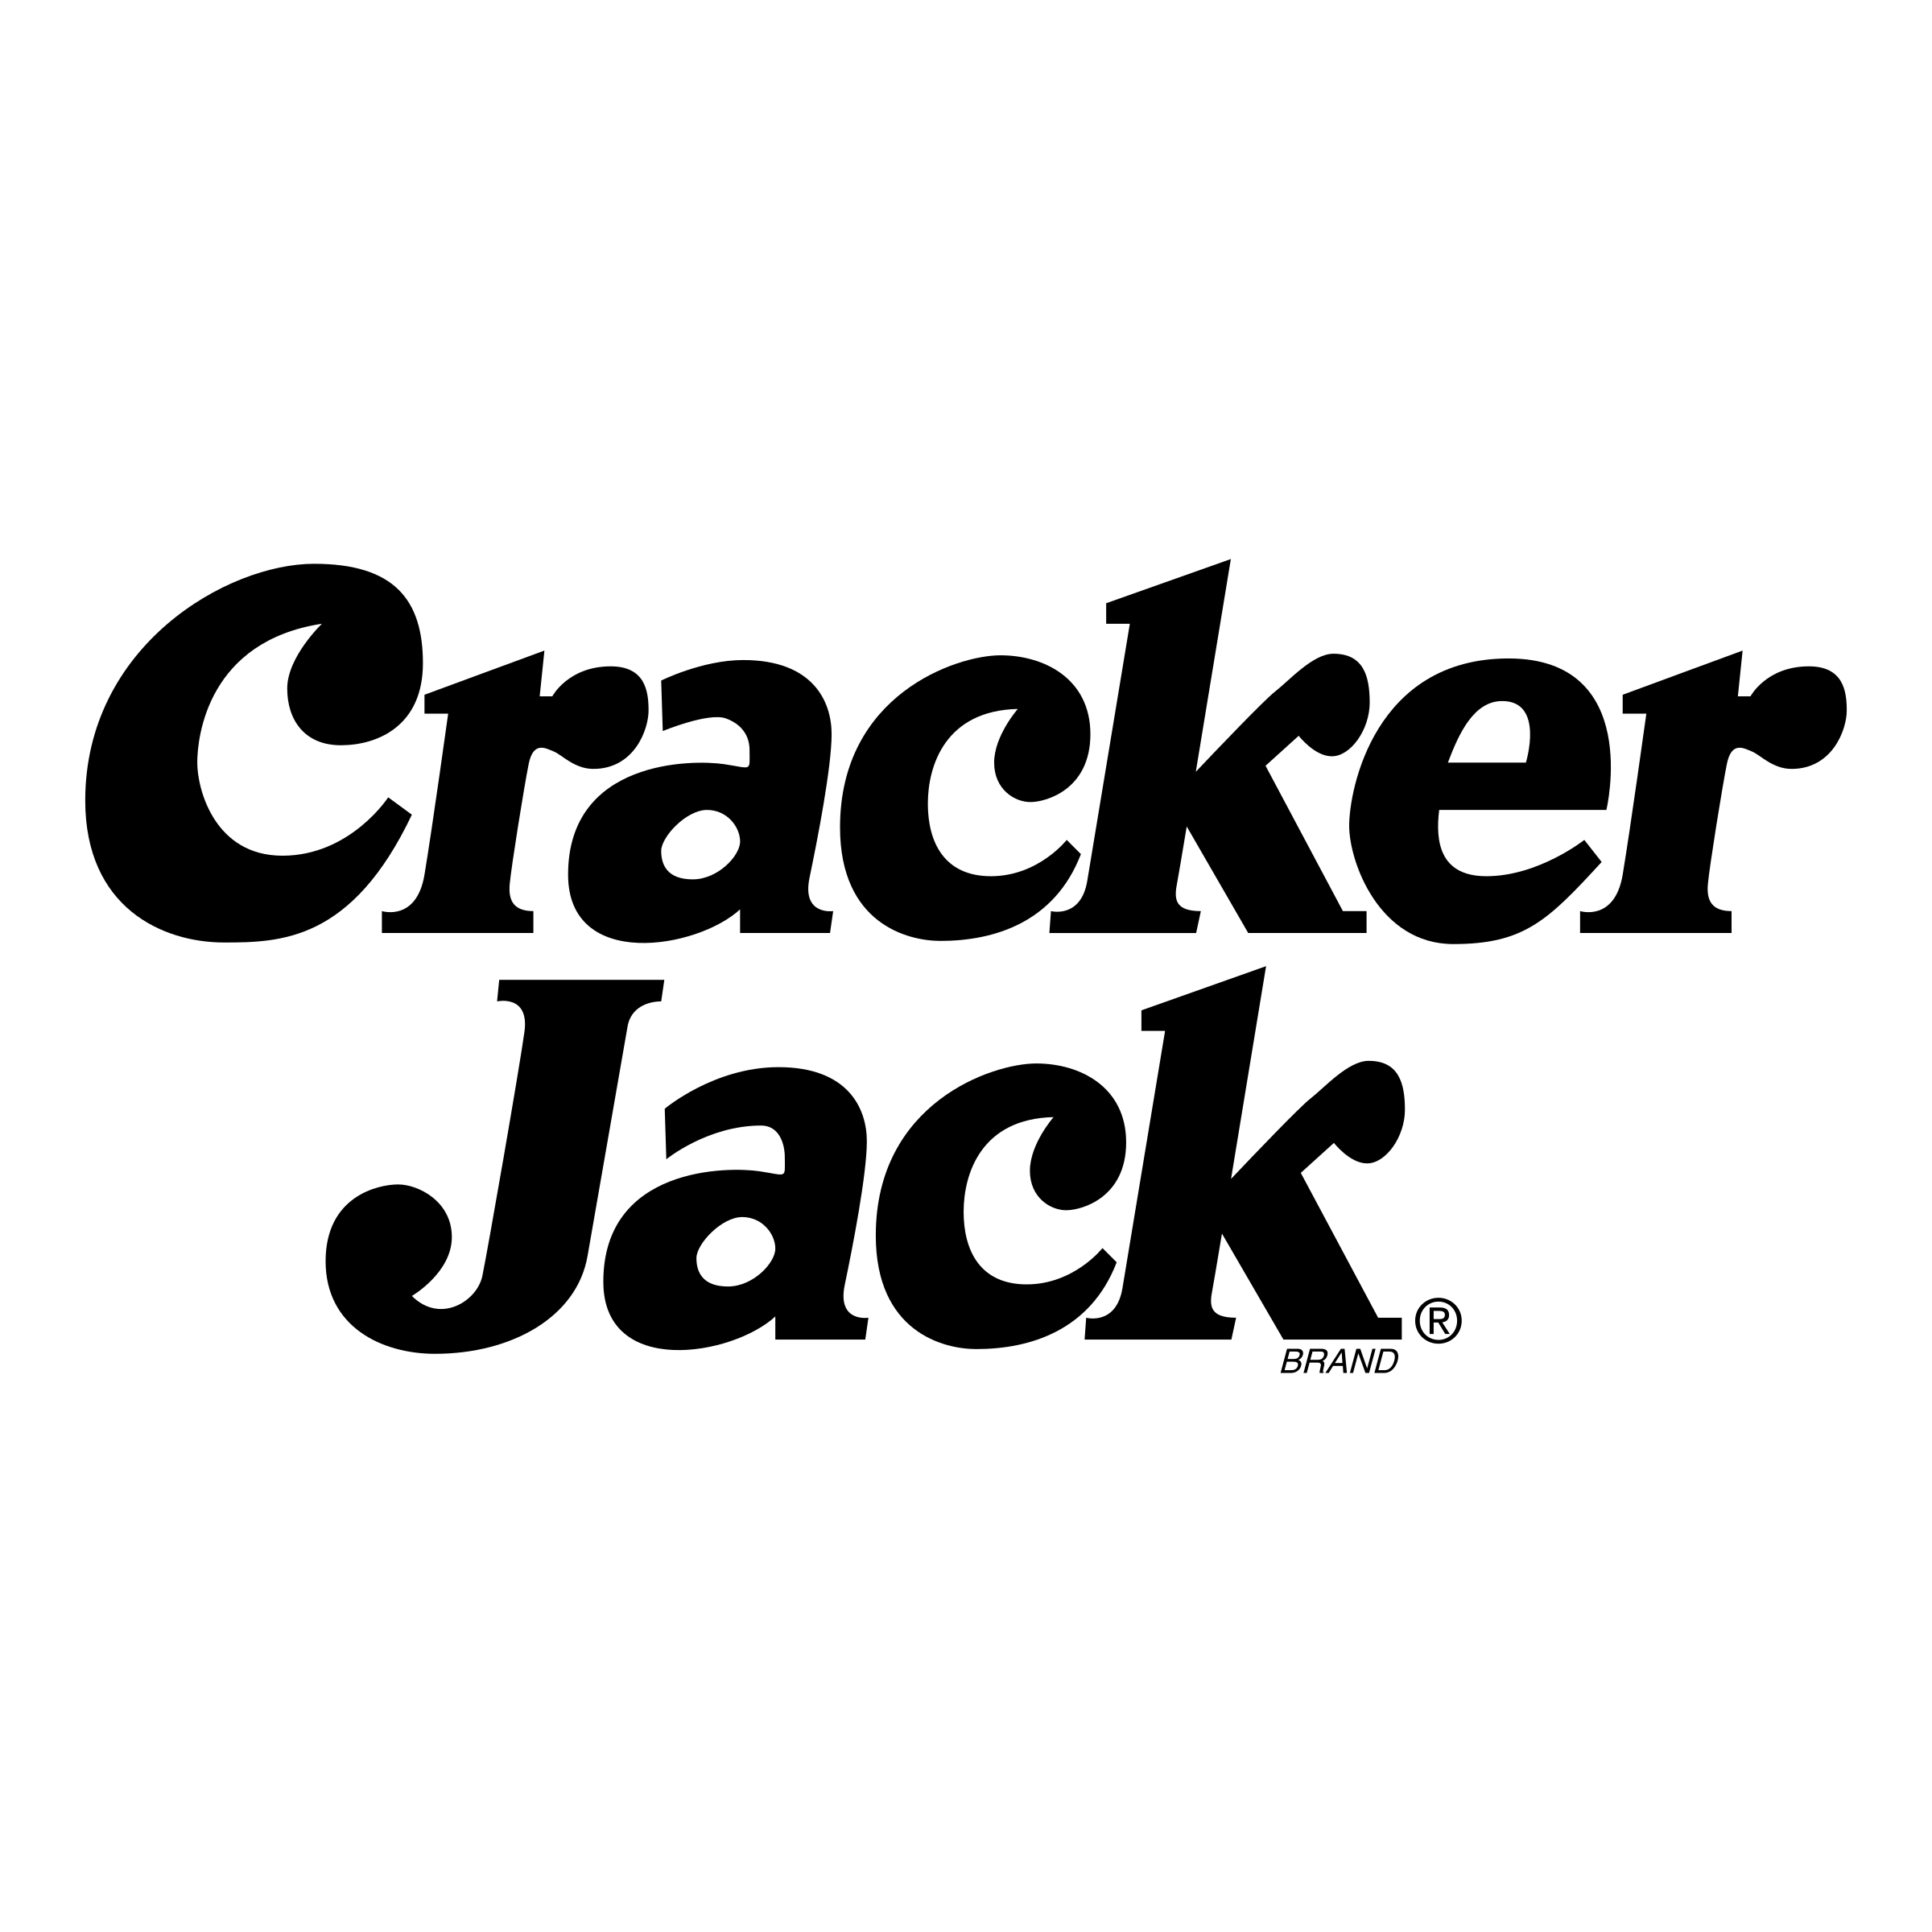 Cracker Logo - Cracker Jack Logo PNG Transparent & SVG Vector